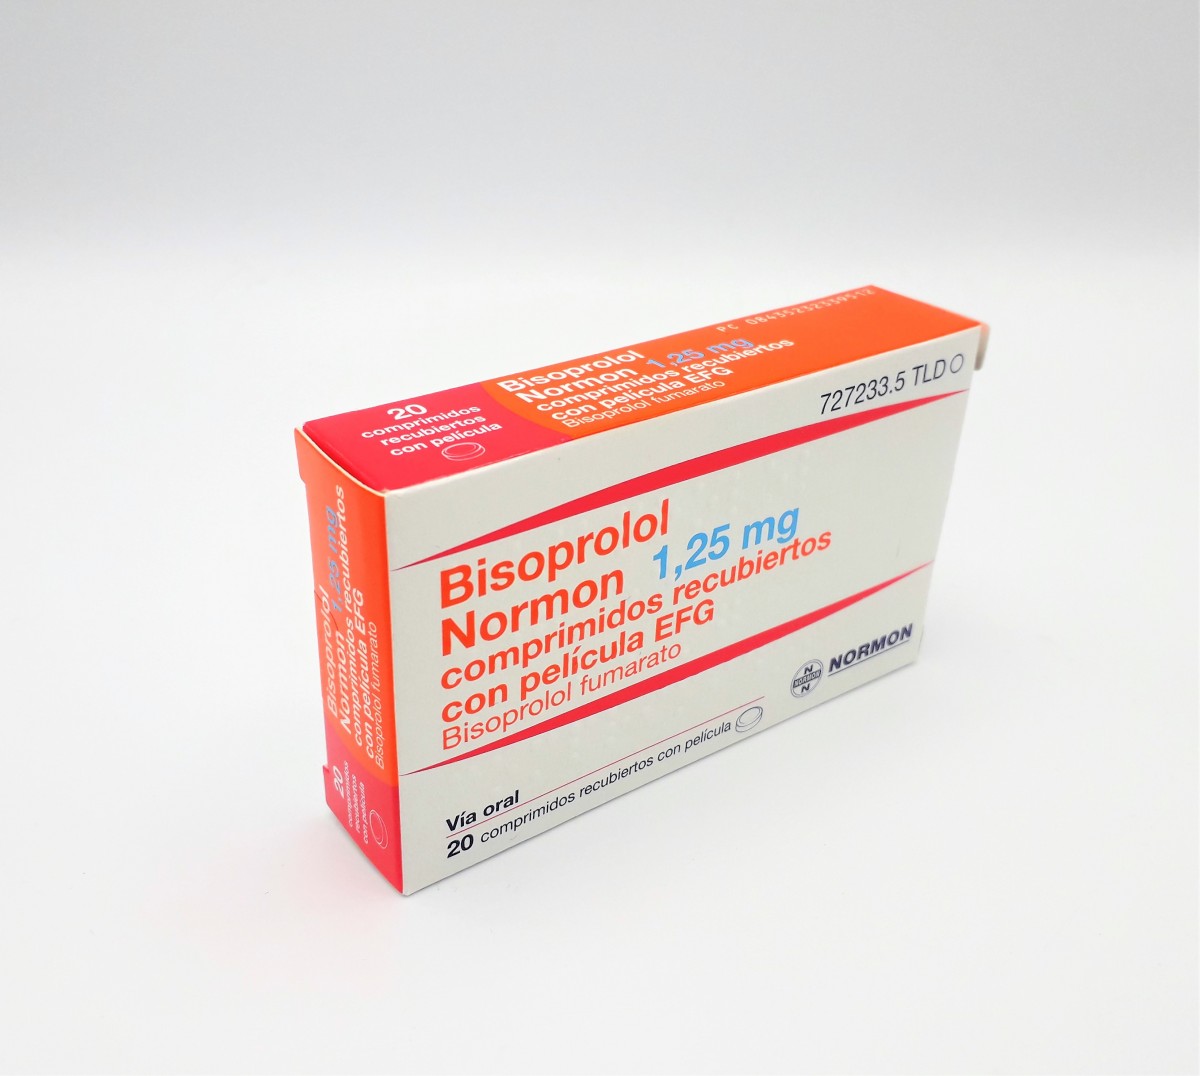 BISOPROLOL NORMON 1,25 MG COMPRIMIDOS RECUBIERTOS CON PELICULA EFG, 20 comprimidos (Blister Al/PVC) fotografía del envase.